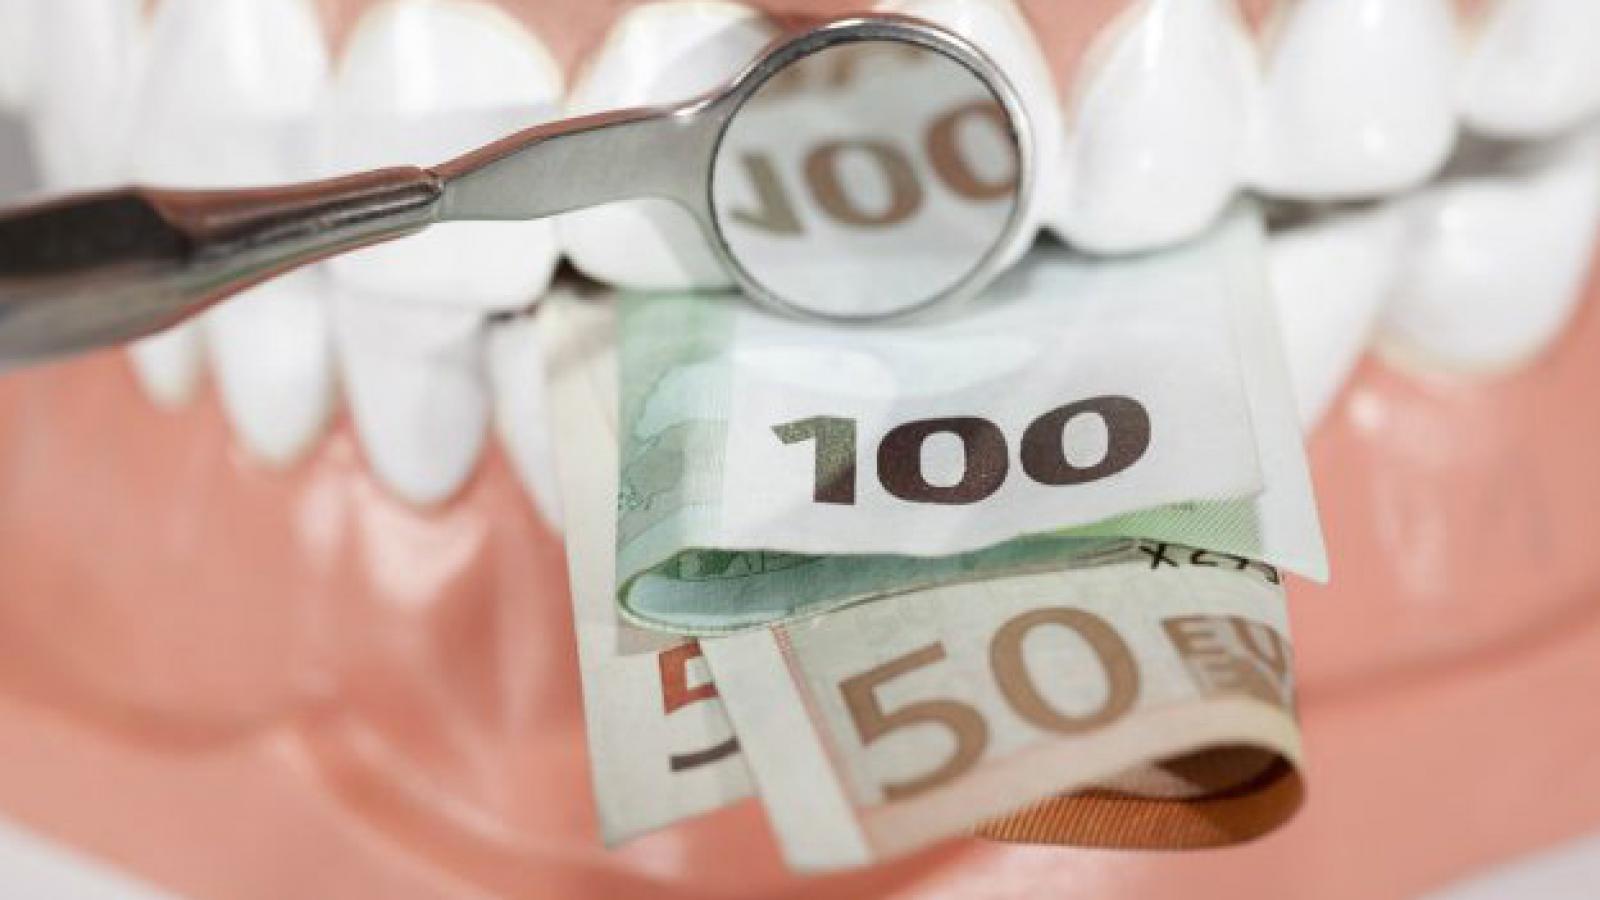 Tandbehandling i udlandet, hvornår kan det betale sig?